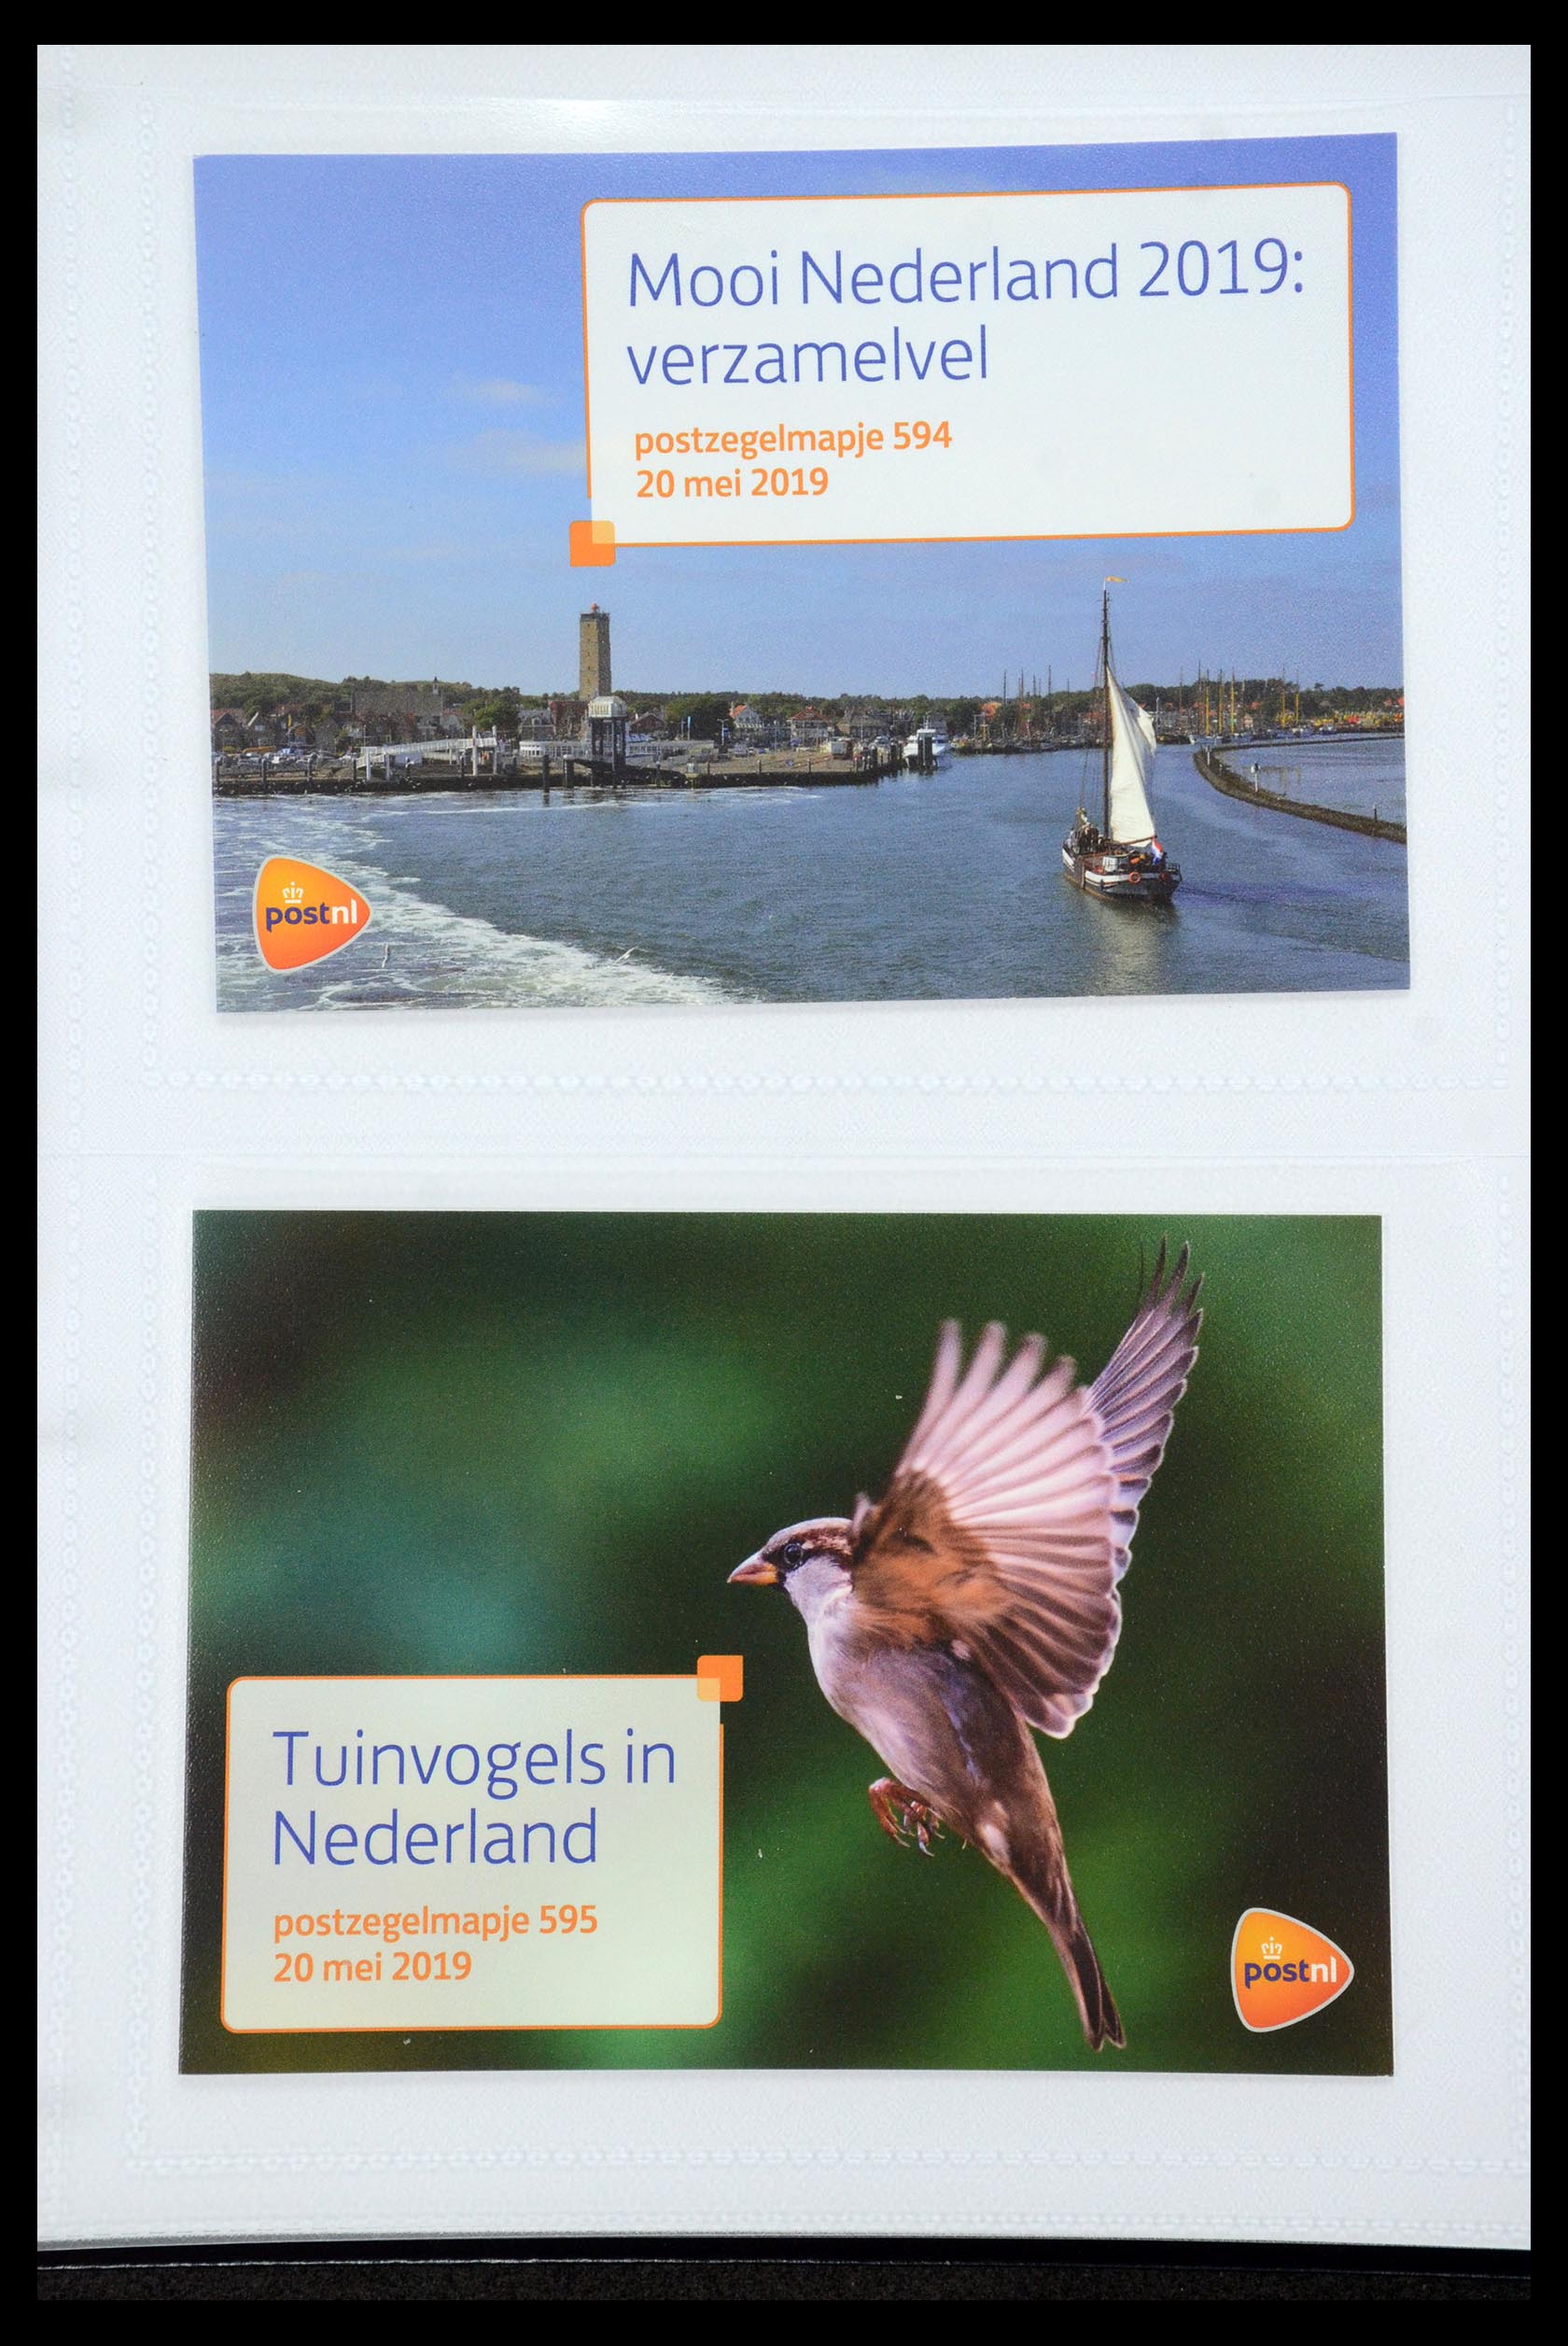 35947 359 - Stamp Collection 35947 Netherlands PTT presentation packs 1982-2019!